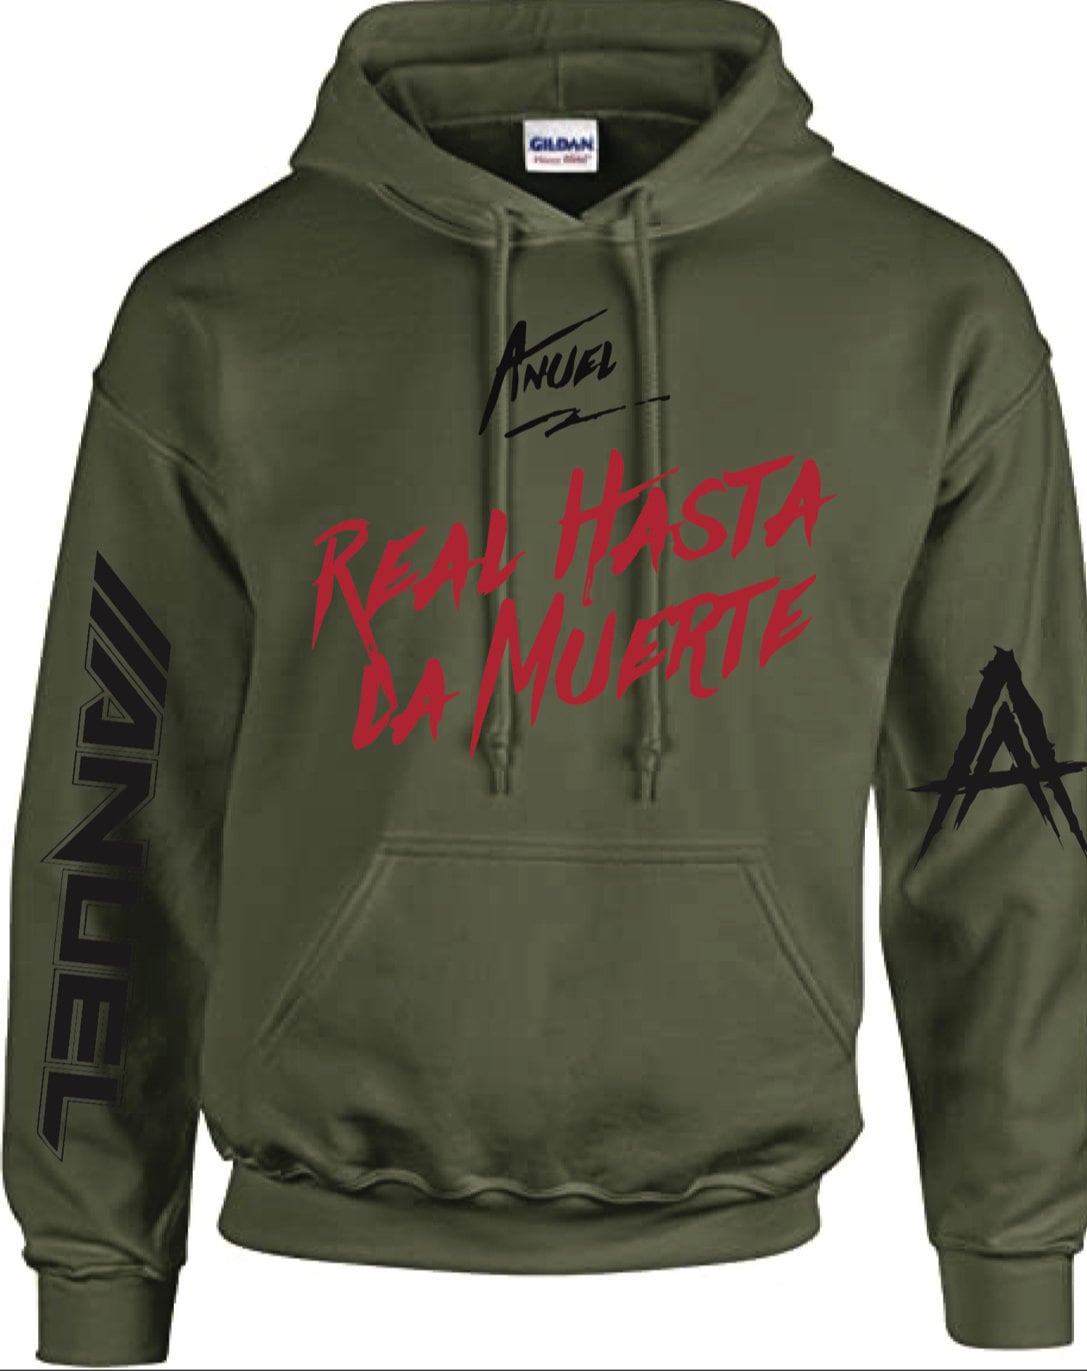 Anuel AA REAL HASTA LA MUERTE Merch Hoodies New Logo Sweatshirt Men/Women  Cosplay Tour Long Sleeve Hoodie Hooded